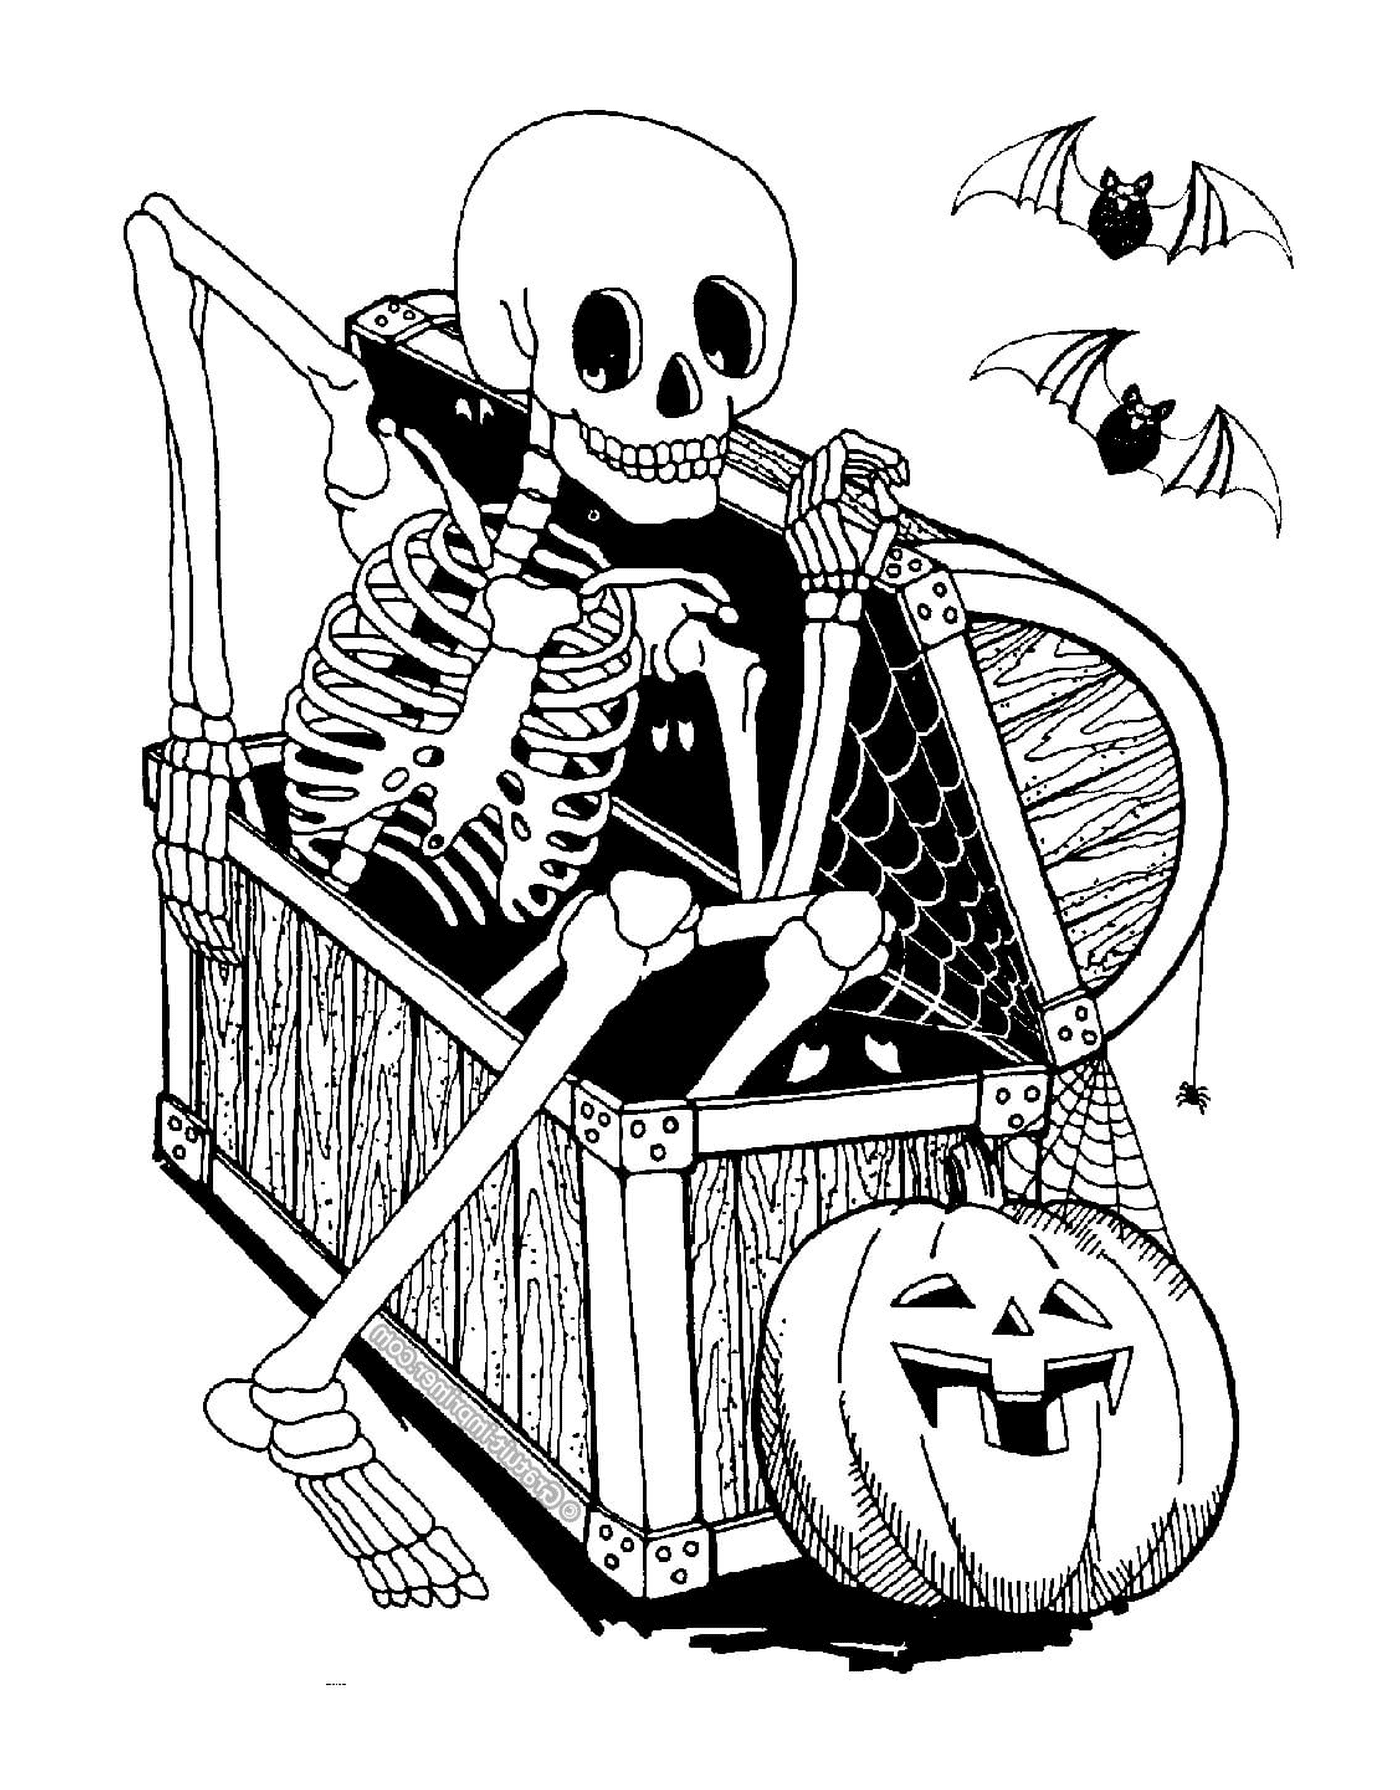  Erwachsene Halloween, Skelett, sitzend auf einem Stuhl 